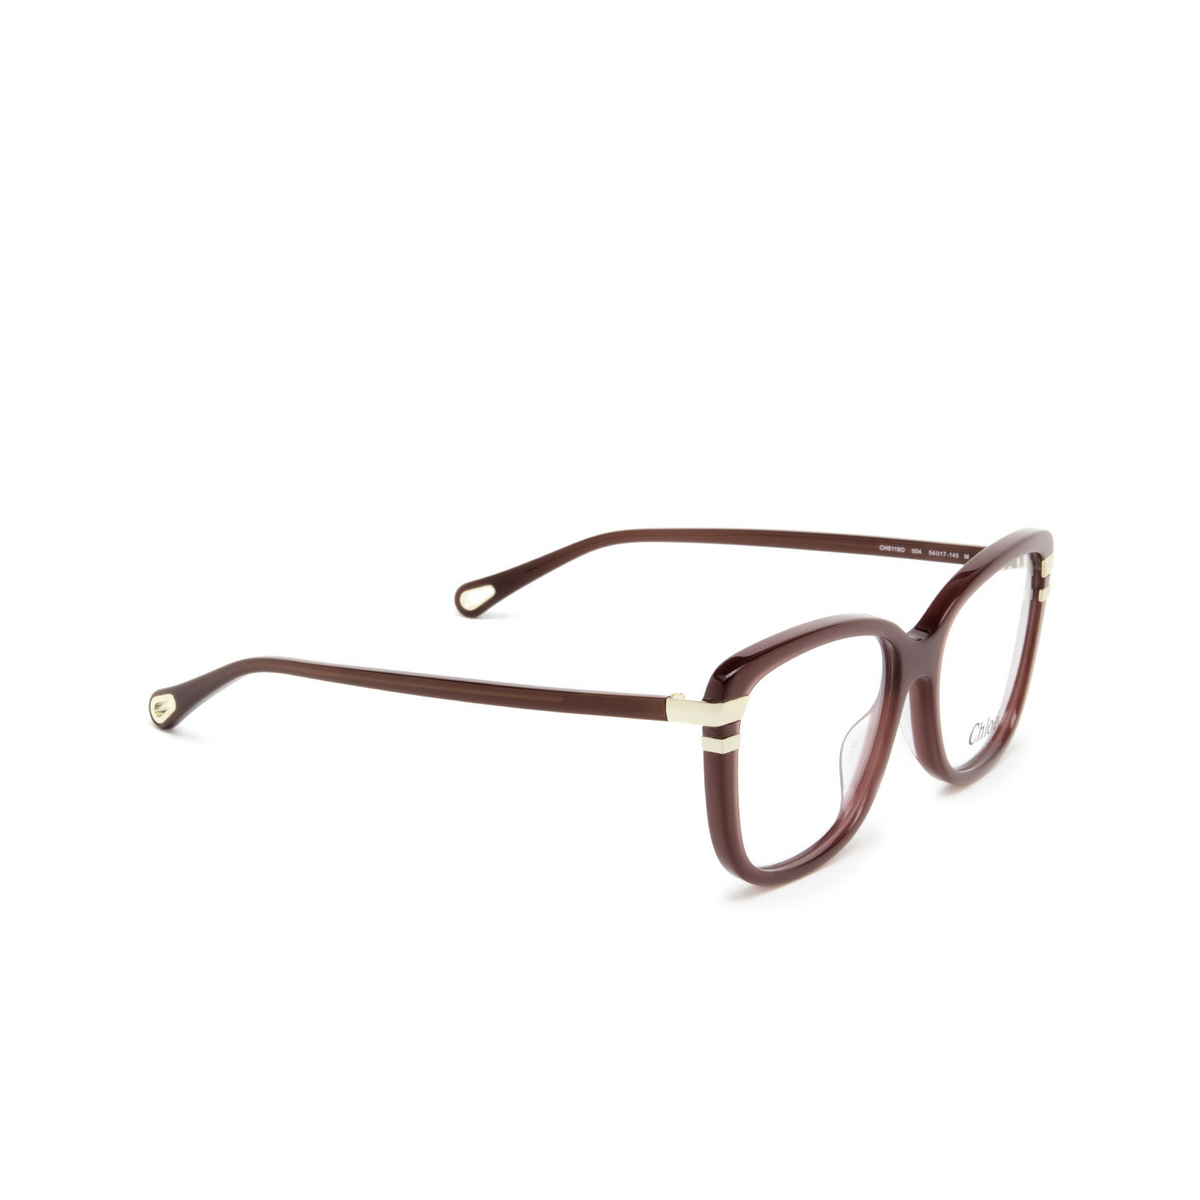 Chloé® Rectangle Eyeglasses: CH0119O color Burgundy 004 - three-quarters view.